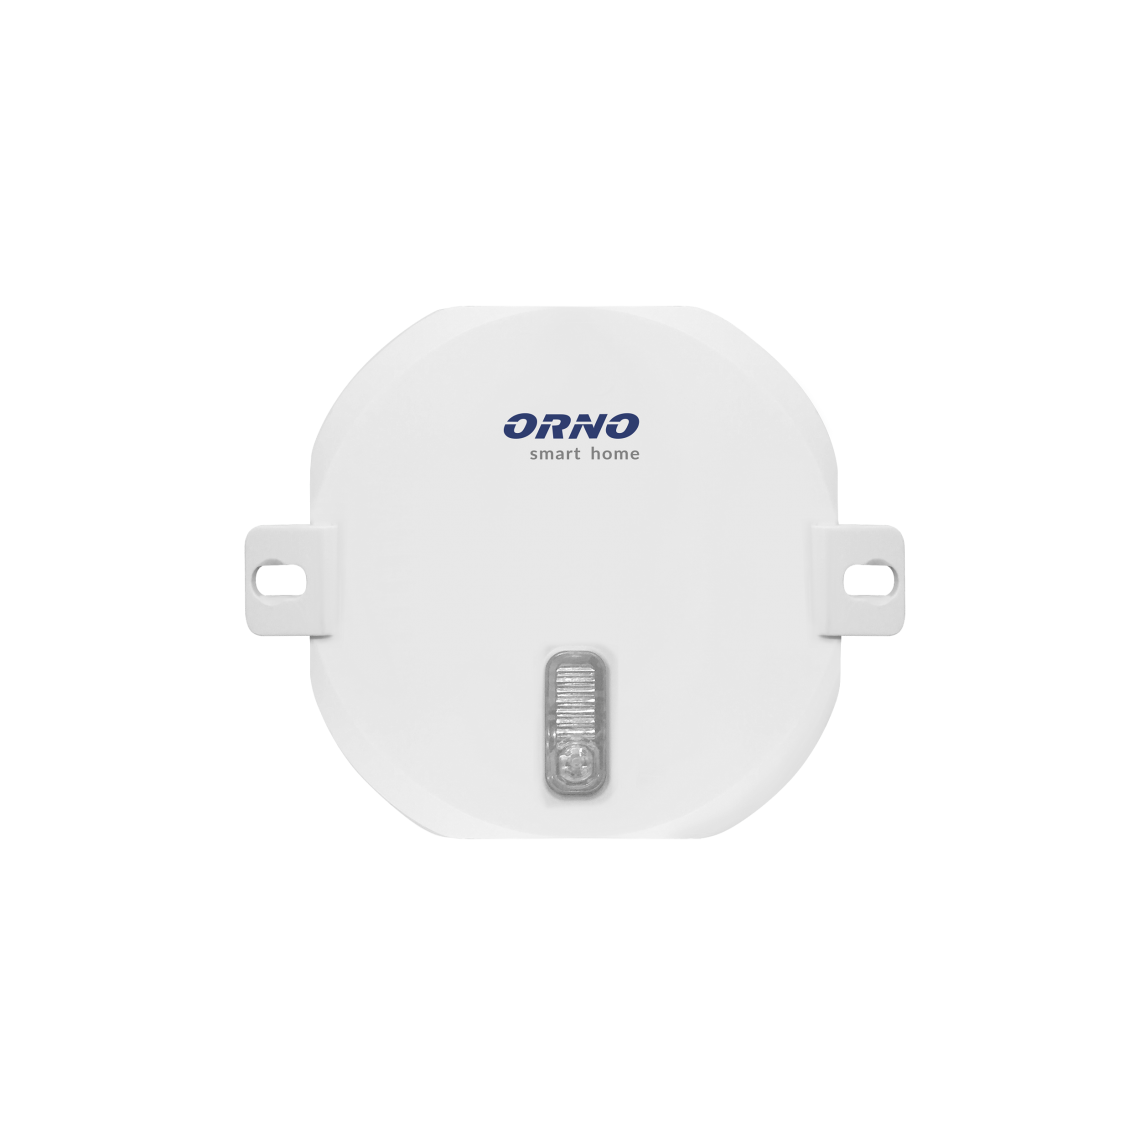 Orno - Module volet roulant 300W avec récepteur radio compatible Orno Smart Home et RFXcom - Orno - Motorisation de volet